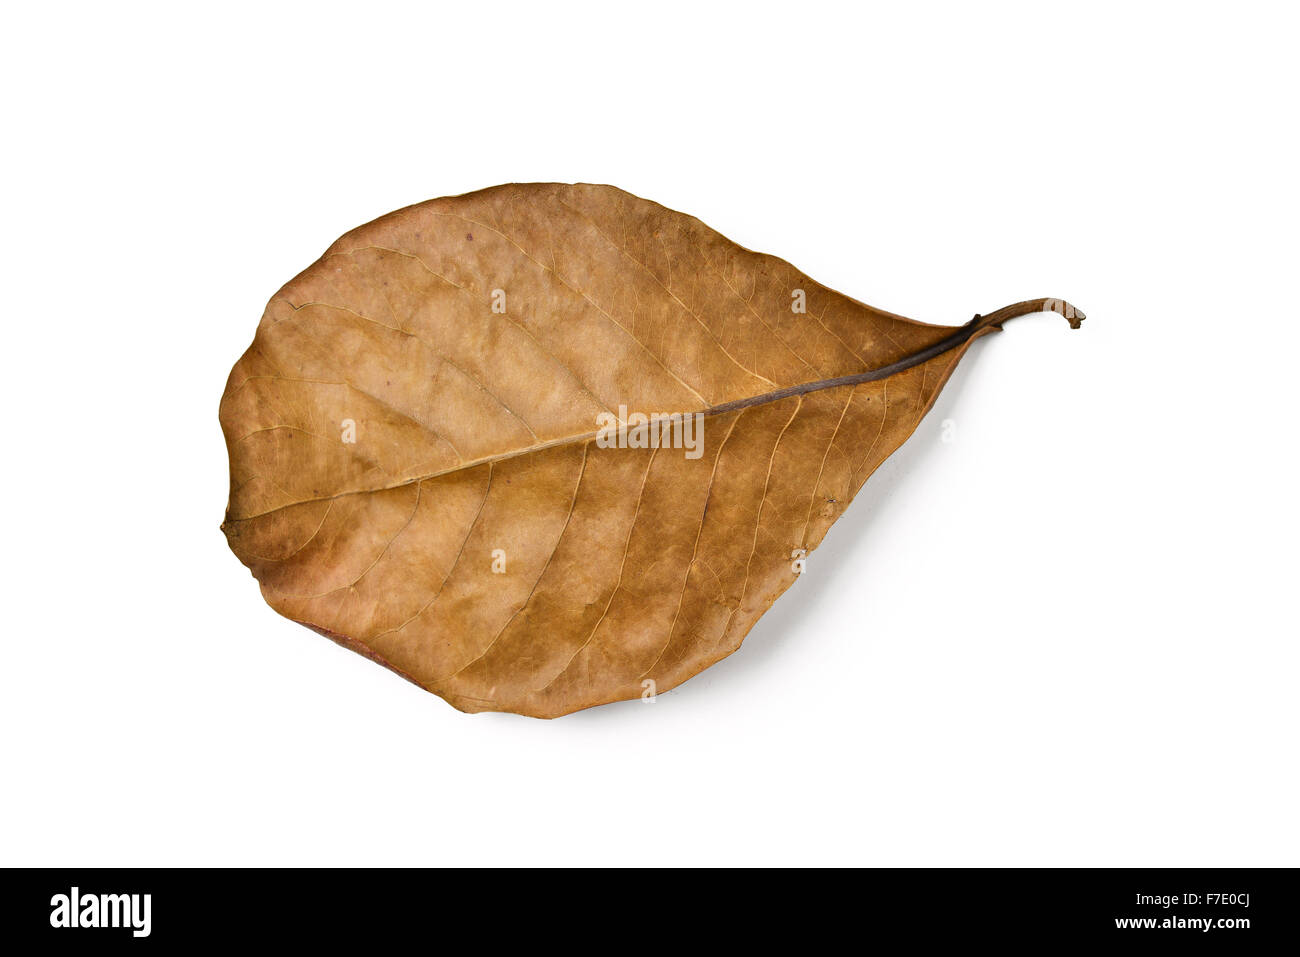 dry terminalia catappa leaf on white background Stock Photo